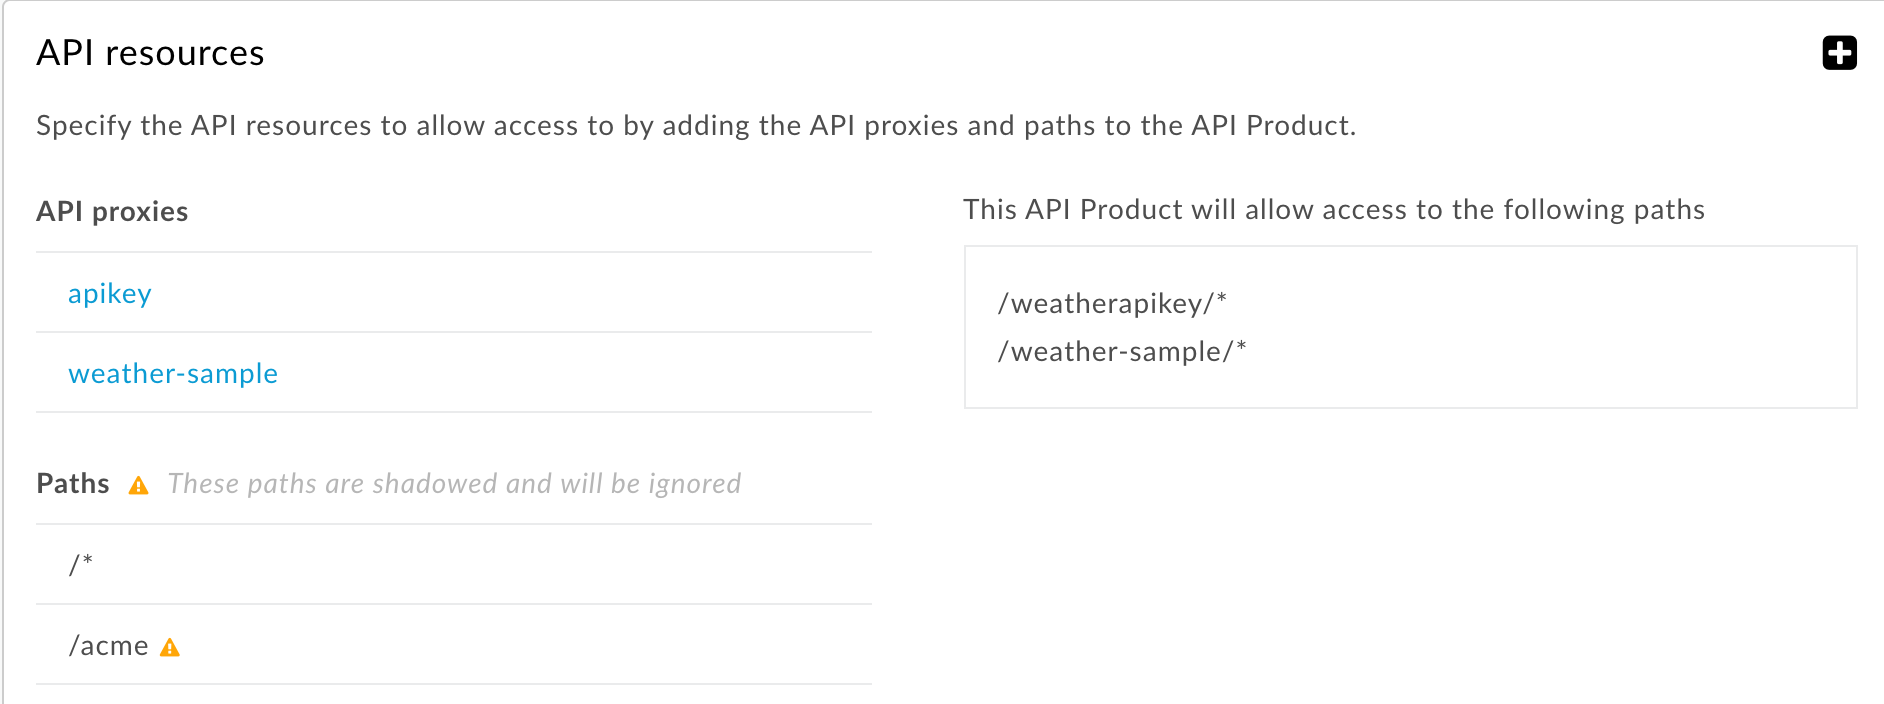 O caminho do recurso aplicado a todos os proxies de API e o caminho mais específico é ignorado.